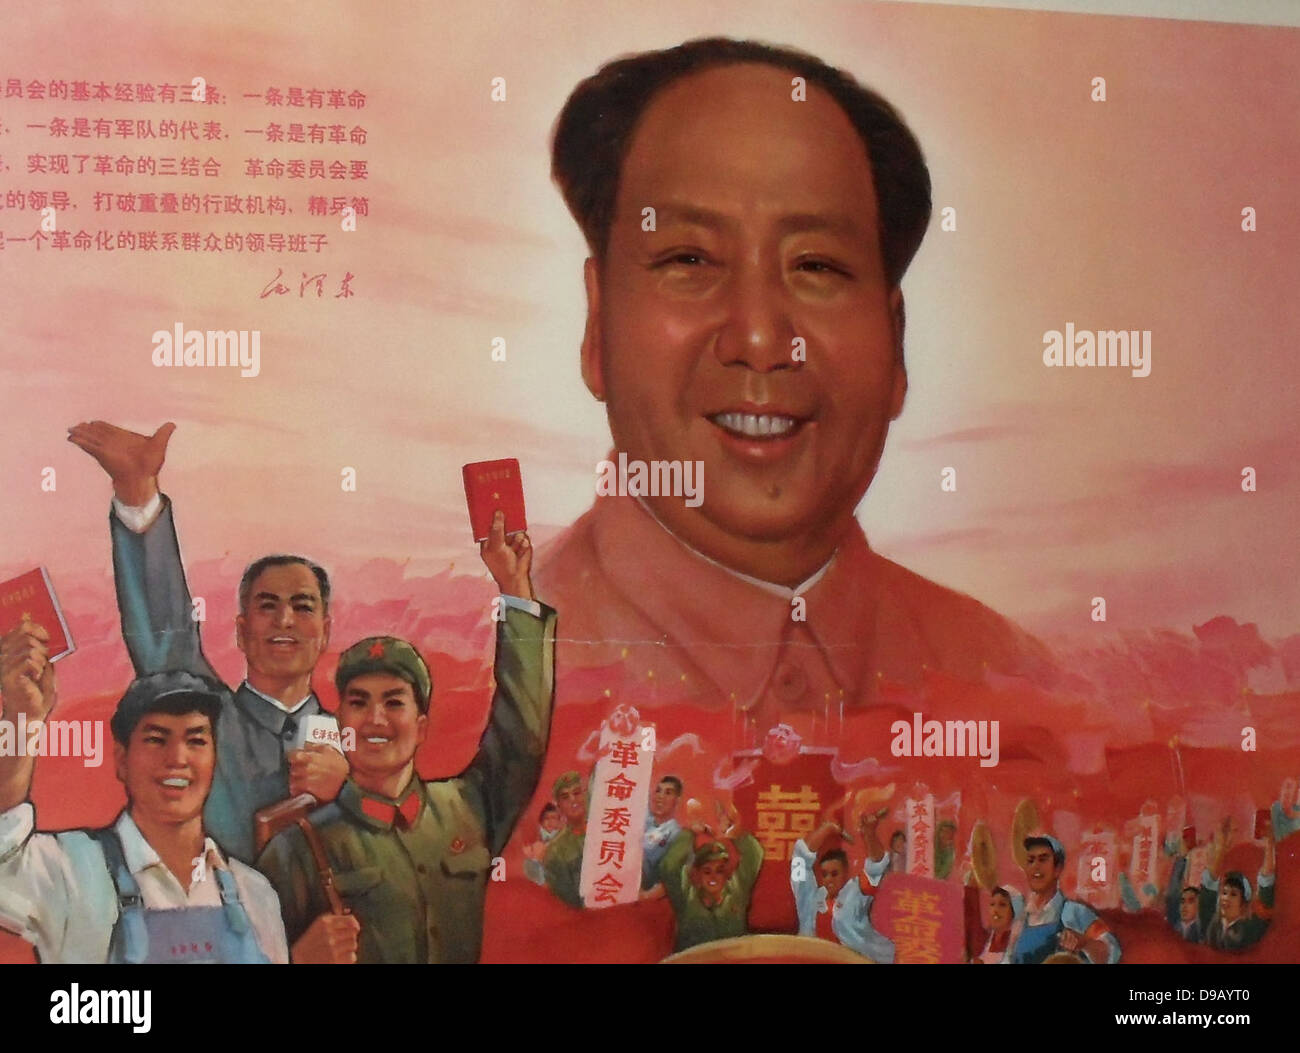 1968 Kulturrevolution, Chinesische Kommunistische Poster. Zeigt Arbeiter und Soldaten mit der "Gedanken des Vorsitzenden Mao Tse-tung (Mao Zedung). Mao's Gesicht ersetzt die Sonne. Der Slogan lautet "revolutionäre Komitees gut sind". Stockfoto